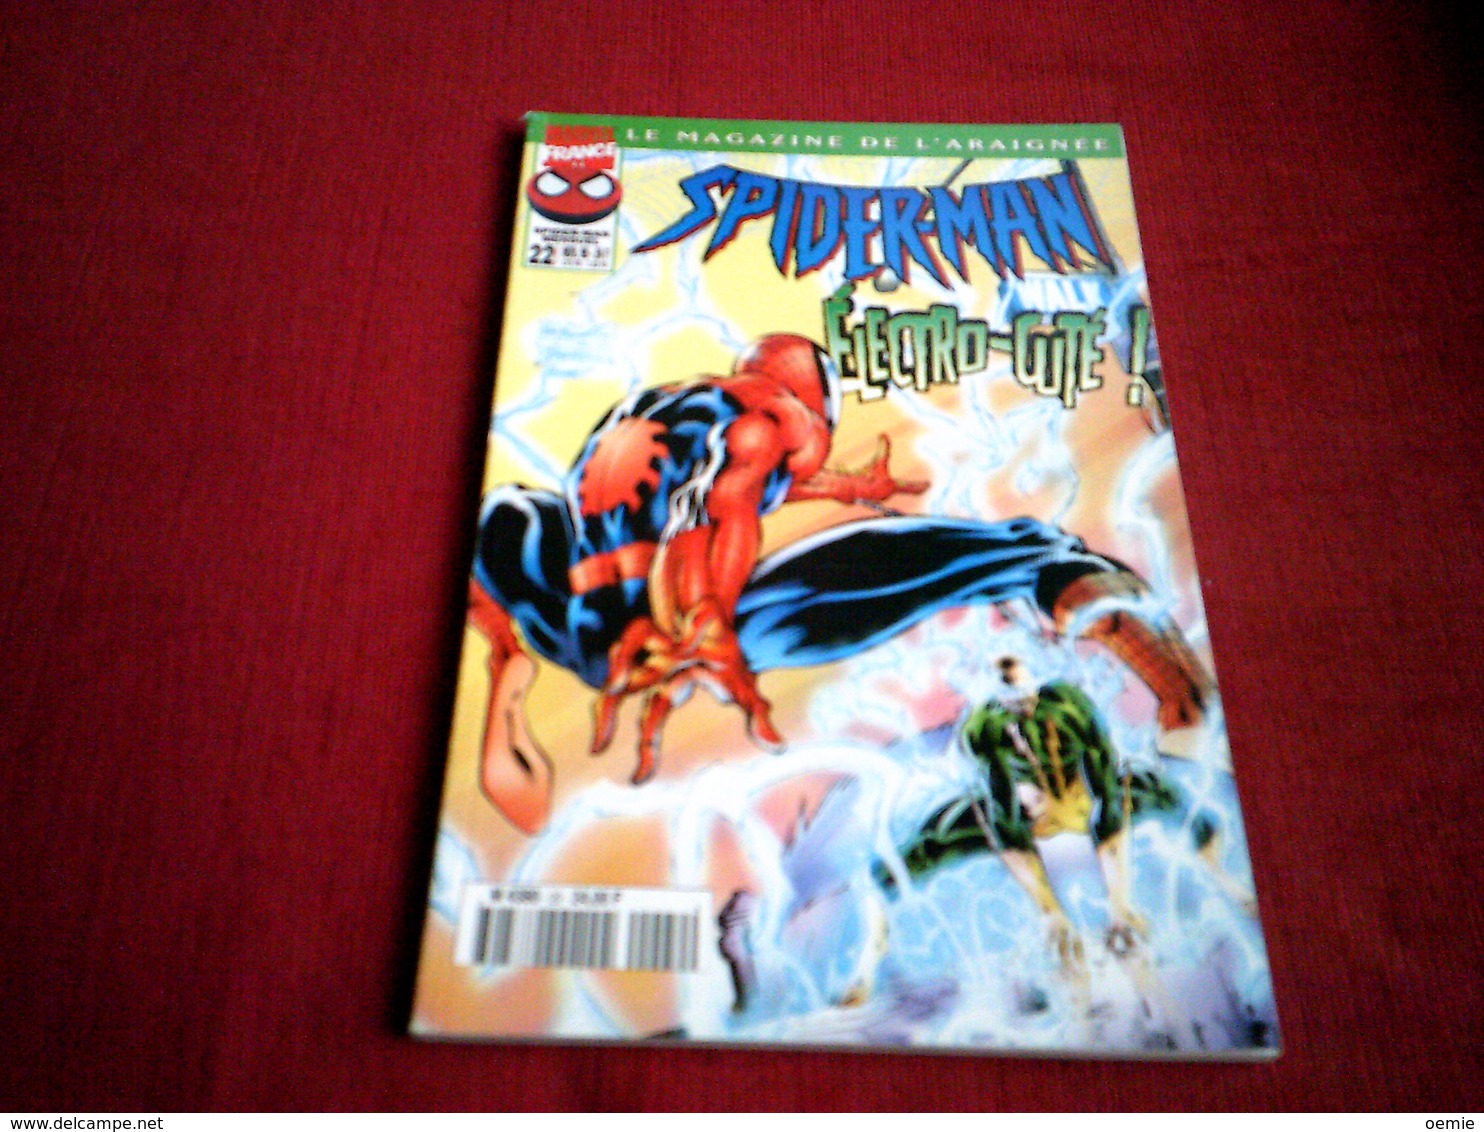 SPIDER MAN  LE MAGAZINE DE L'ARAIGNEE  N° 22  /  ELECTRO CUTE !   /  NOVEMBRE 1998 - Spiderman